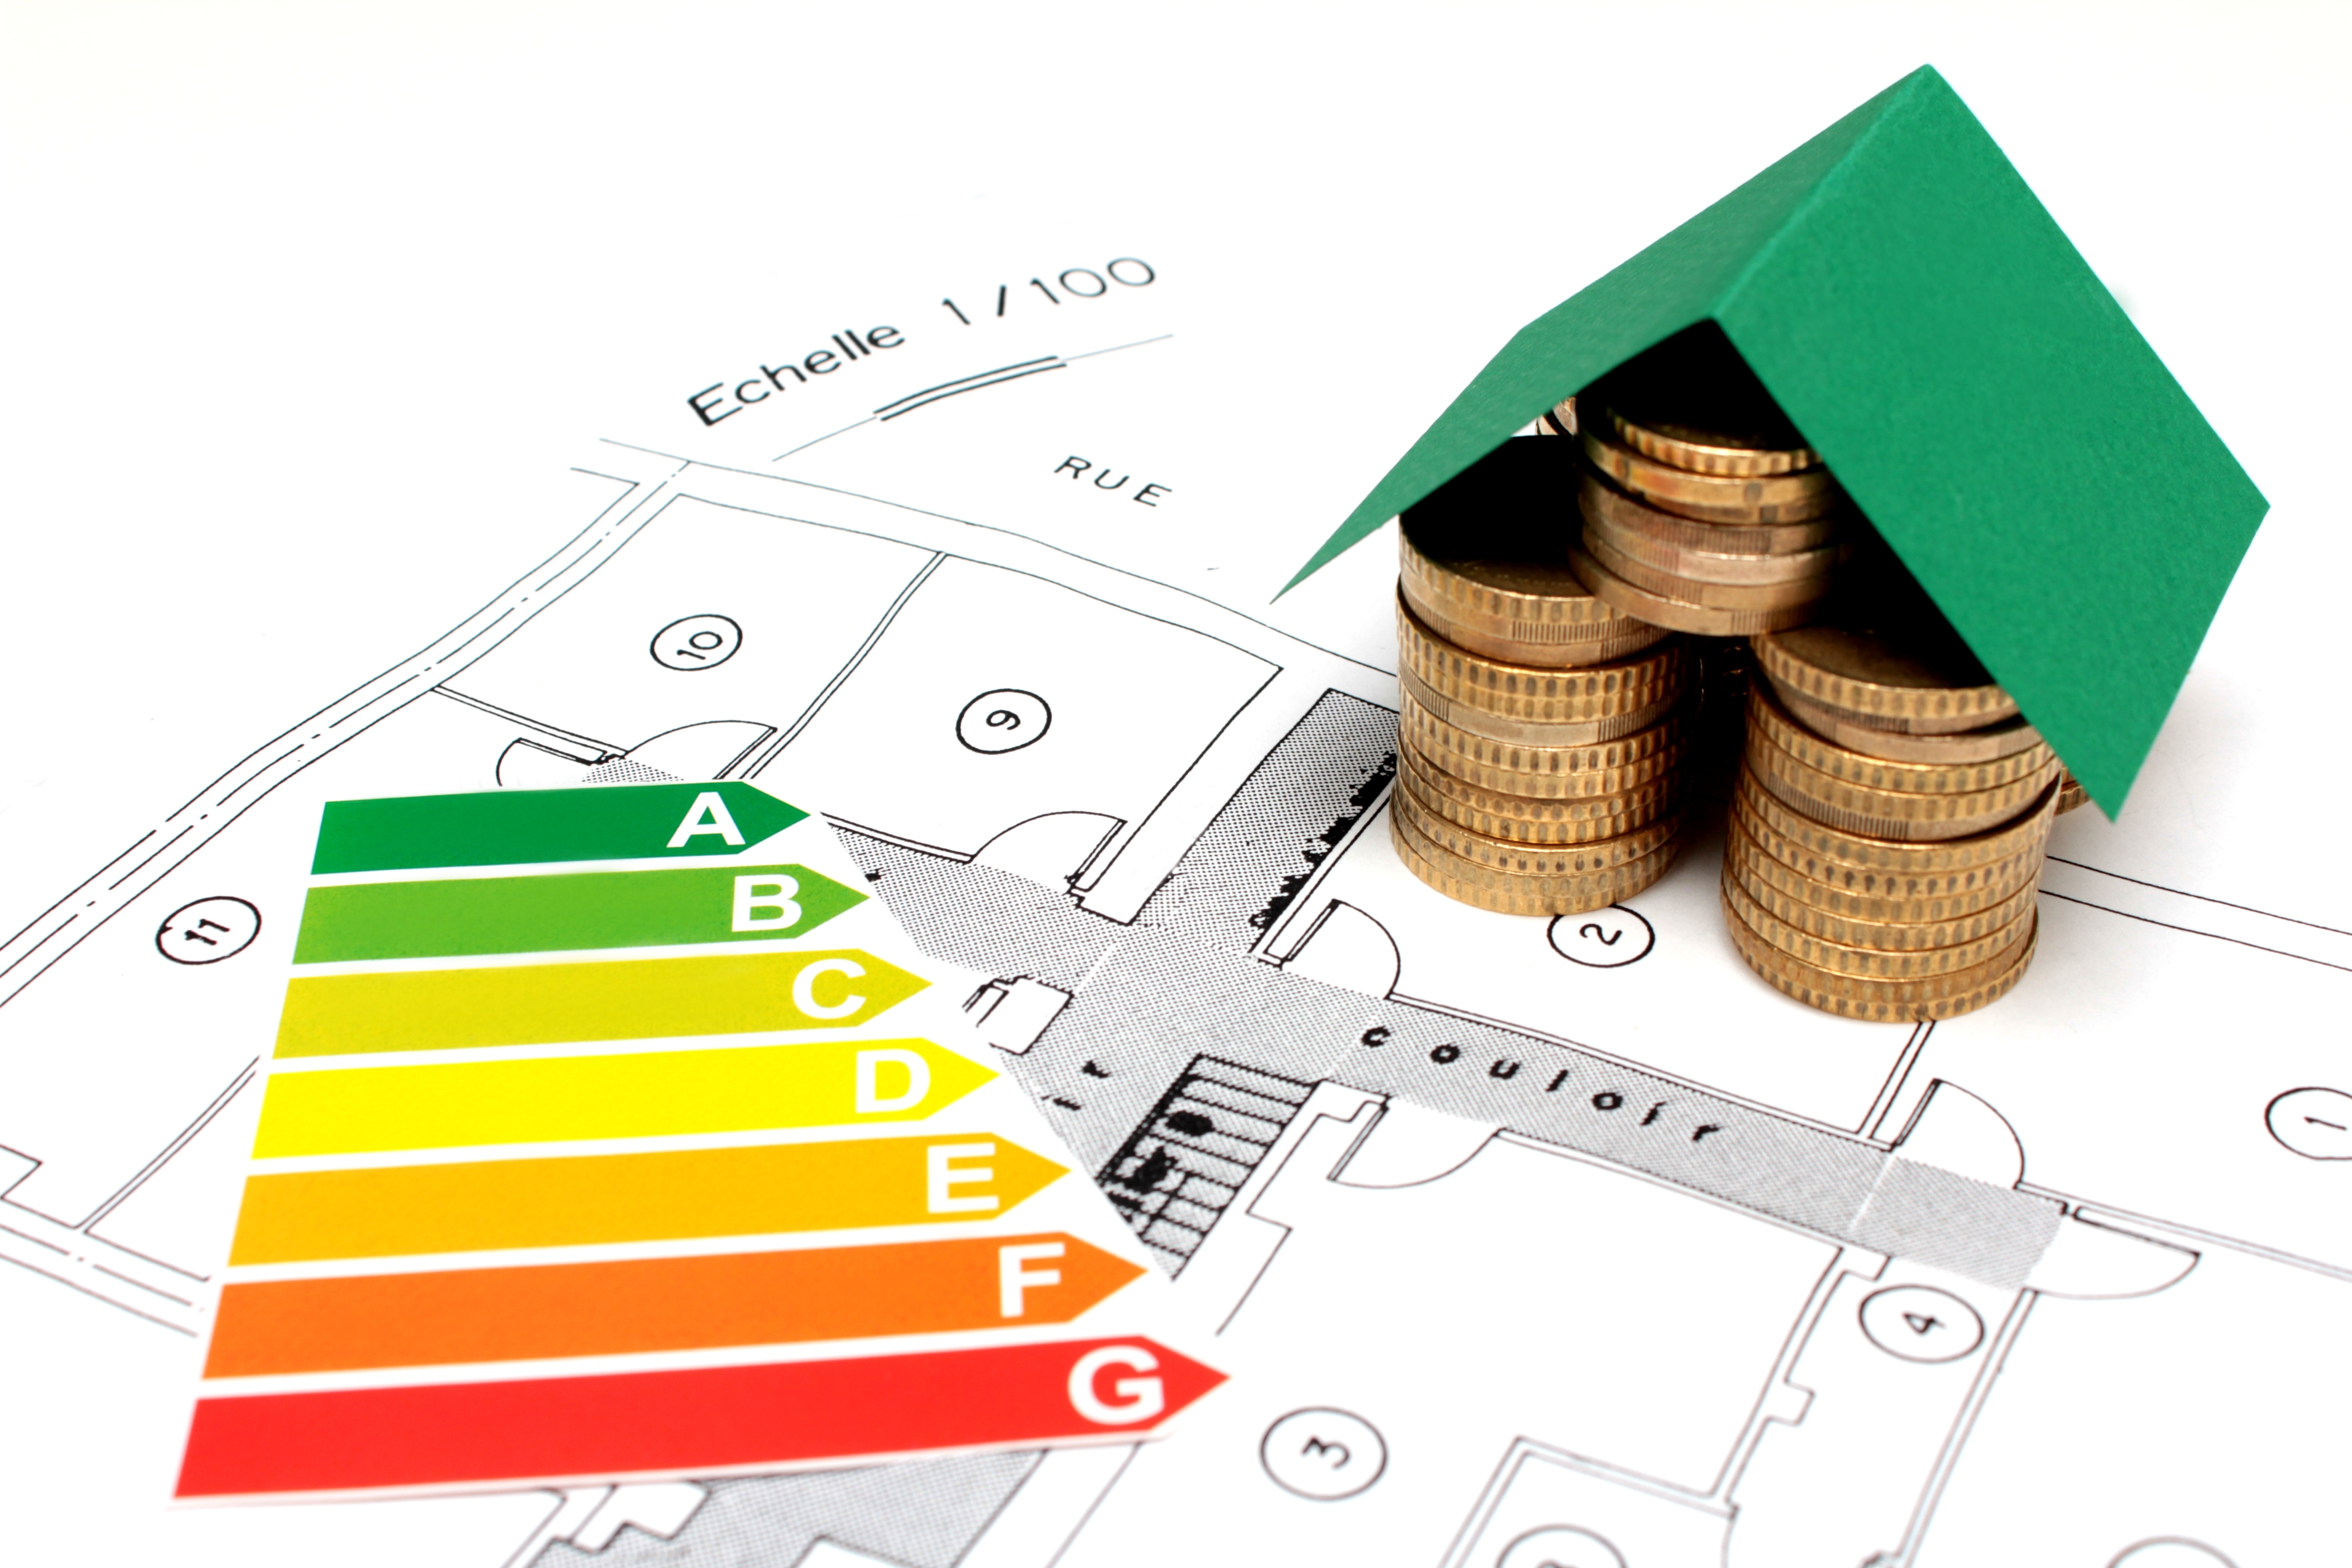 L'audit énergétique devient obligatoire pour la vente de logements énergivores